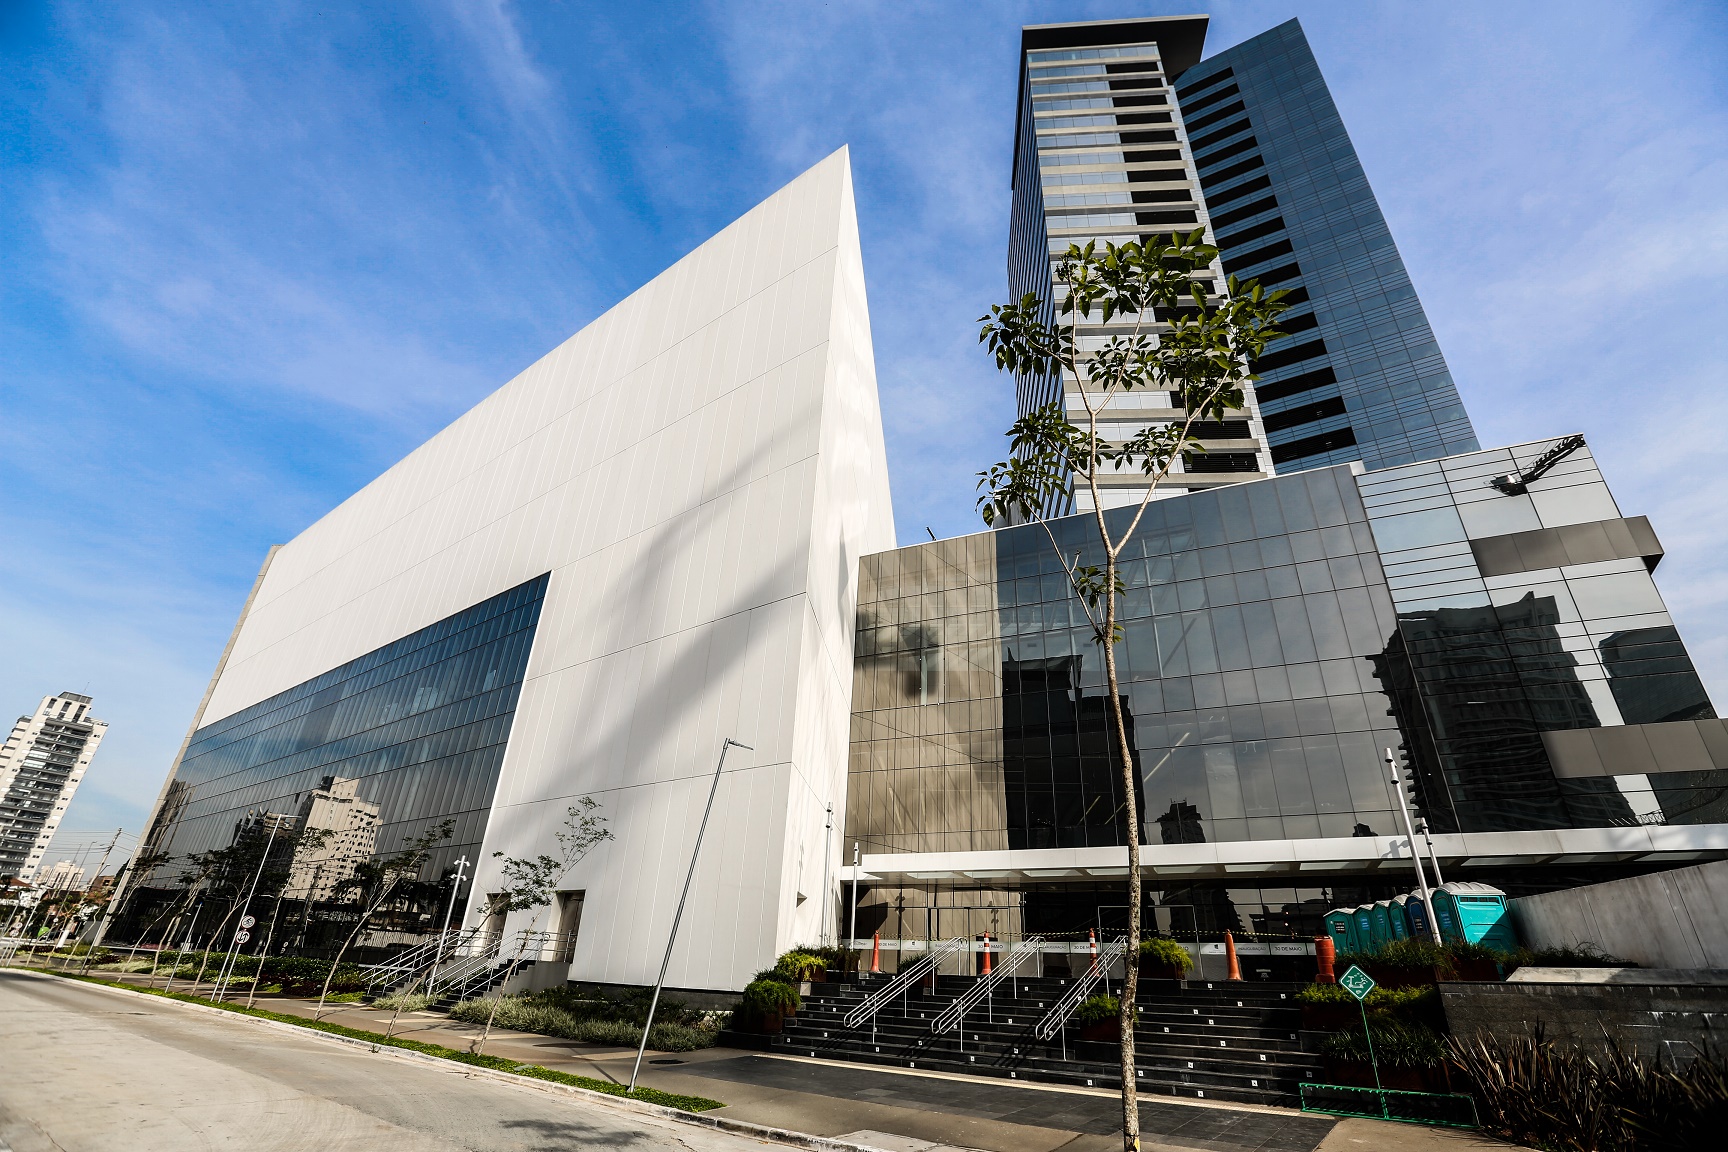 Enashopp vai inaugurar o Shopping Parque da Cidade, em São Paulo